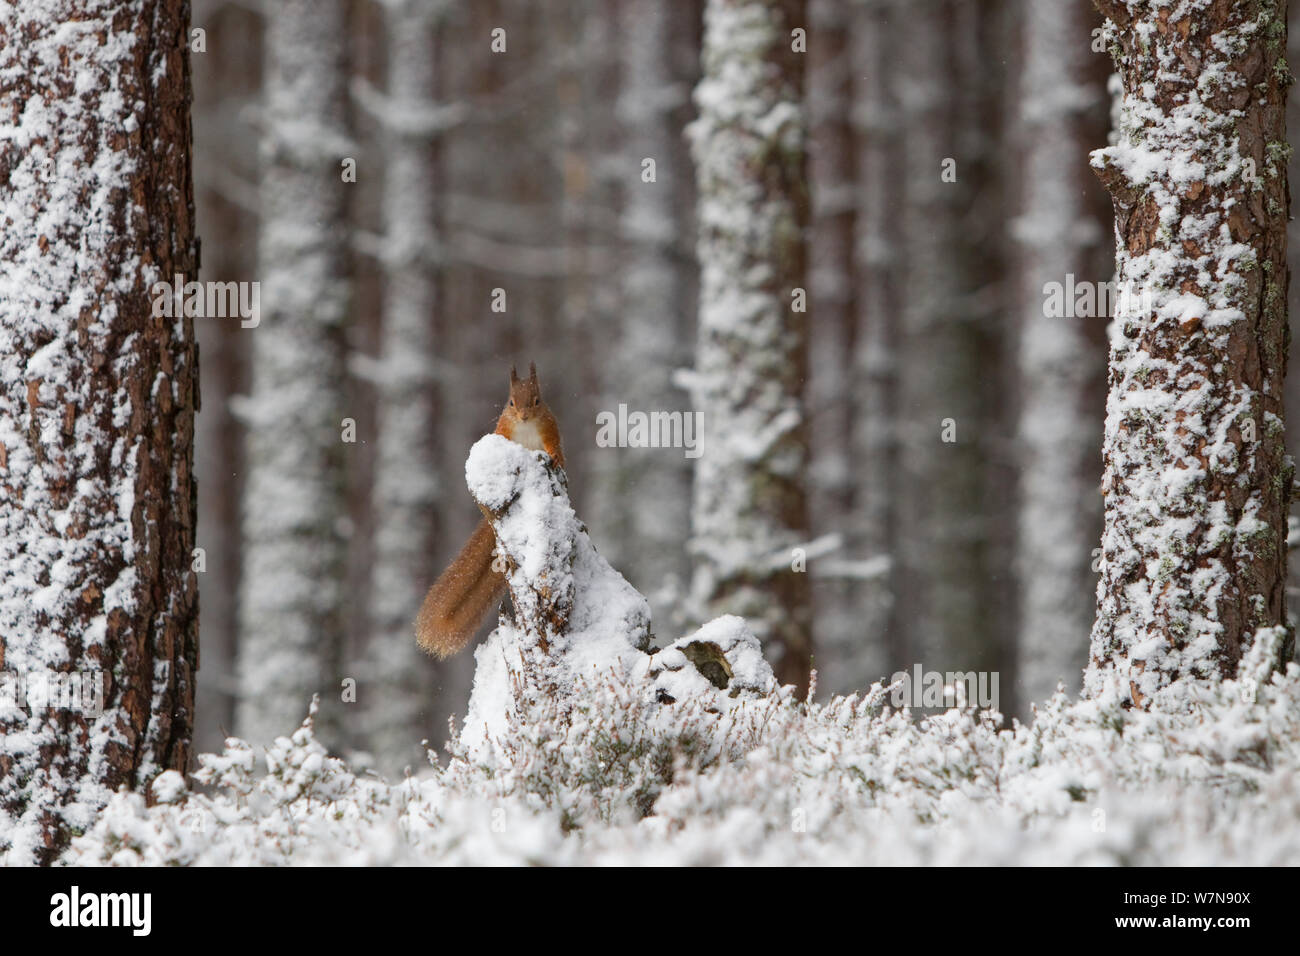 Red scoiattolo (Sciurus vulgaris) nella foresta di pini. Glenfeshie, Scozia, Gennaio.Lo sapevate? Gli scoiattoli rossi hanno cinque dita ma solo quattro dita! Foto Stock